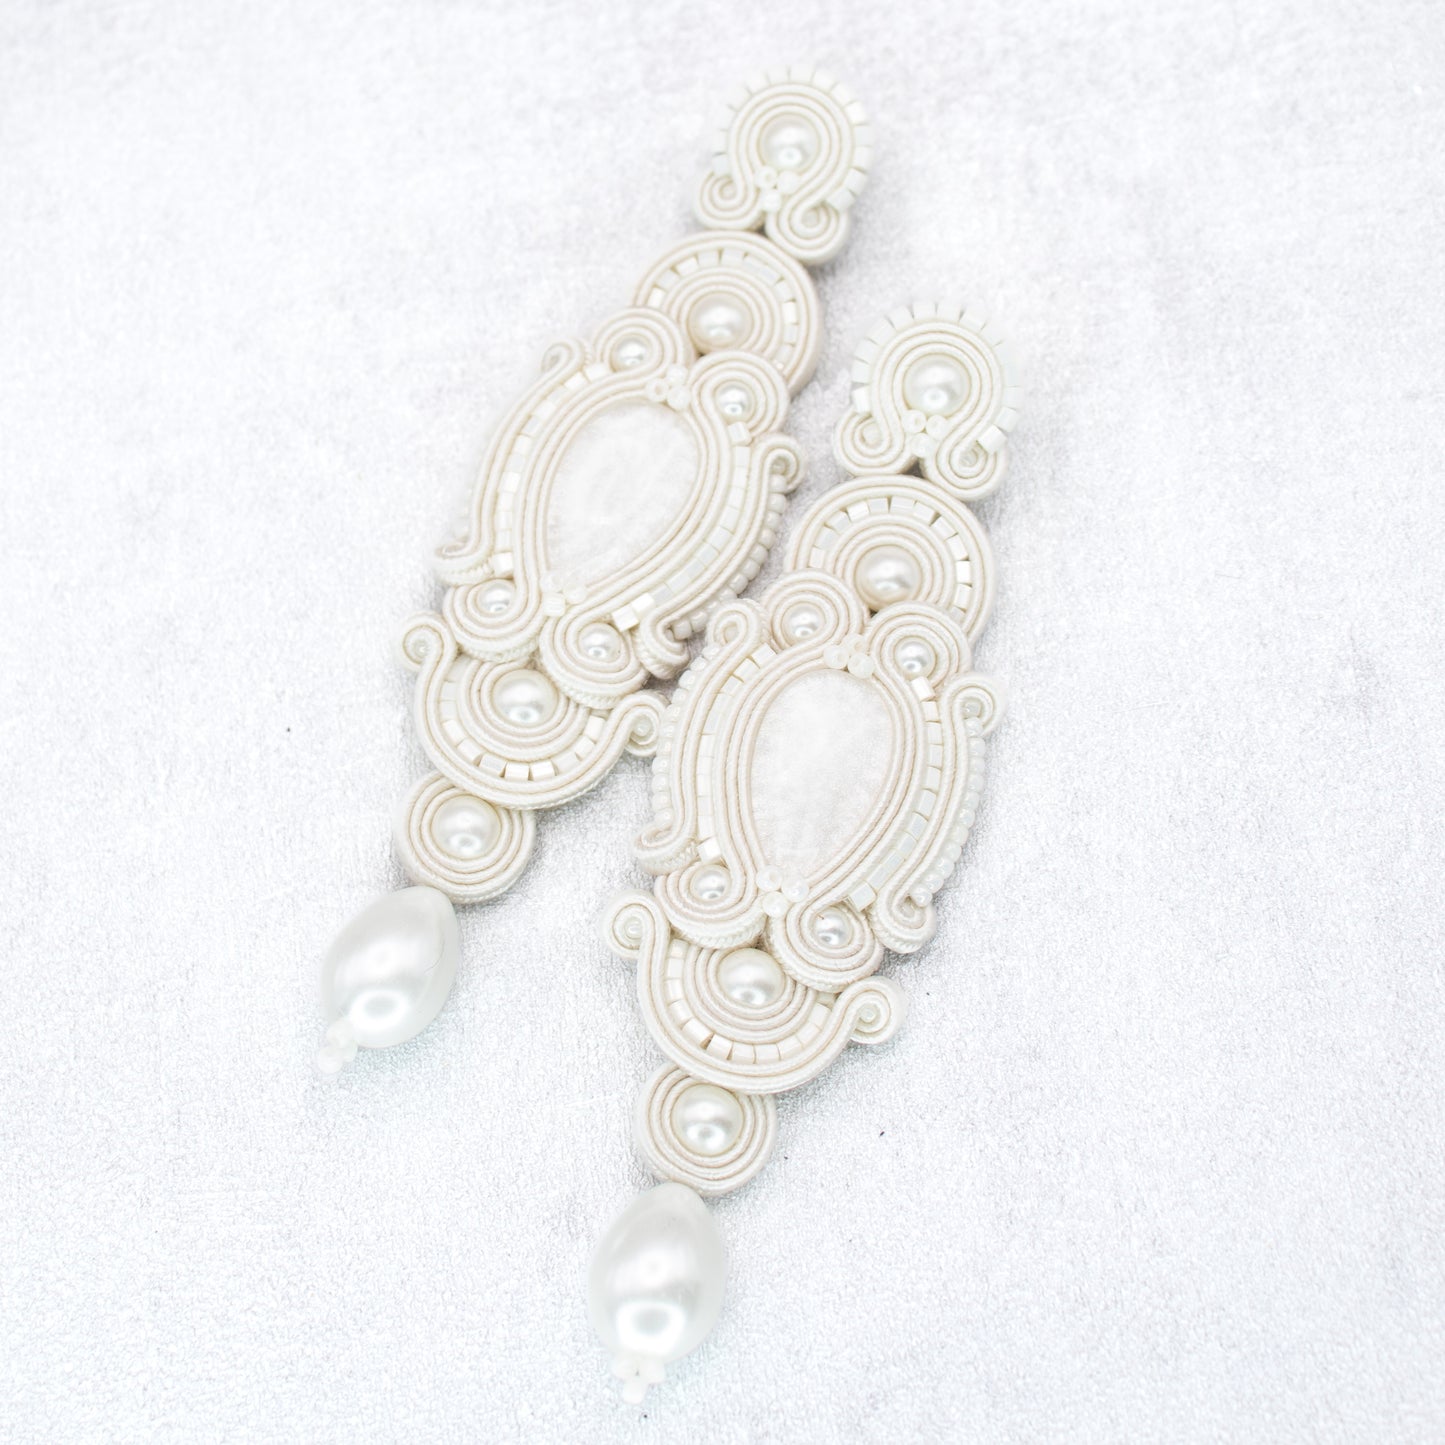 Bridal ivory earrings. Handmade soutache earrings. Lightweight long earrings.